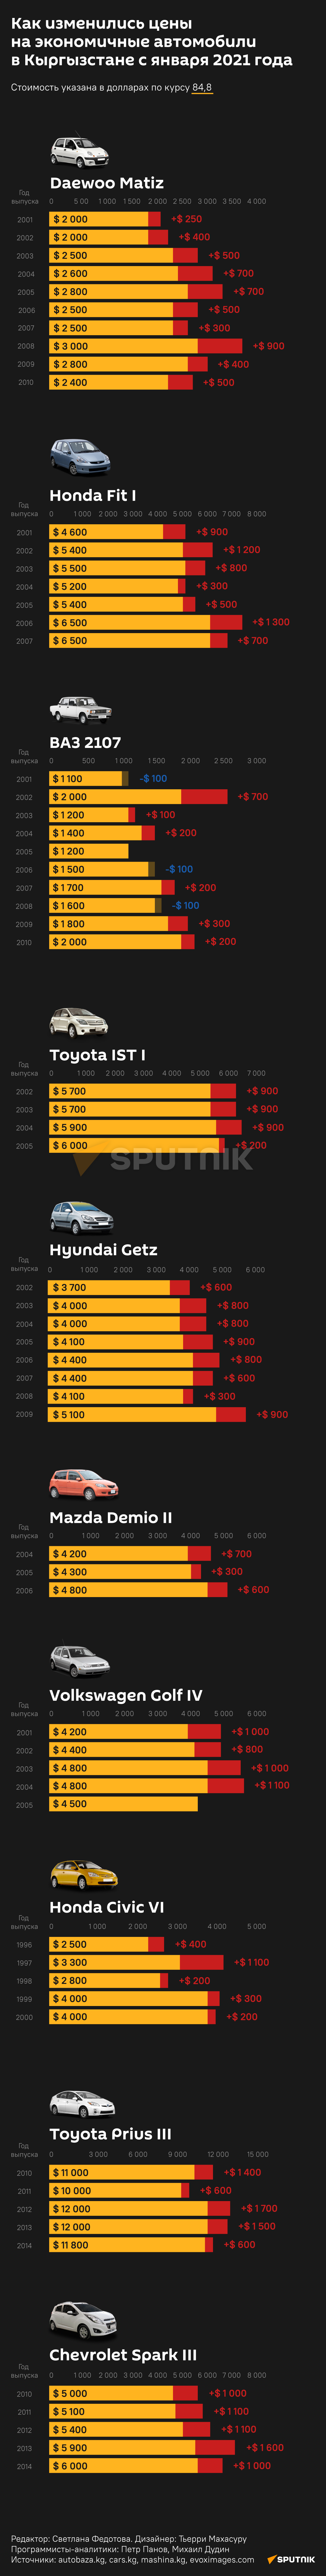 Как изменились цены  на экономичные автомобили  в Кыргызстане с января 2021 года 26.11.21 - Sputnik Кыргызстан